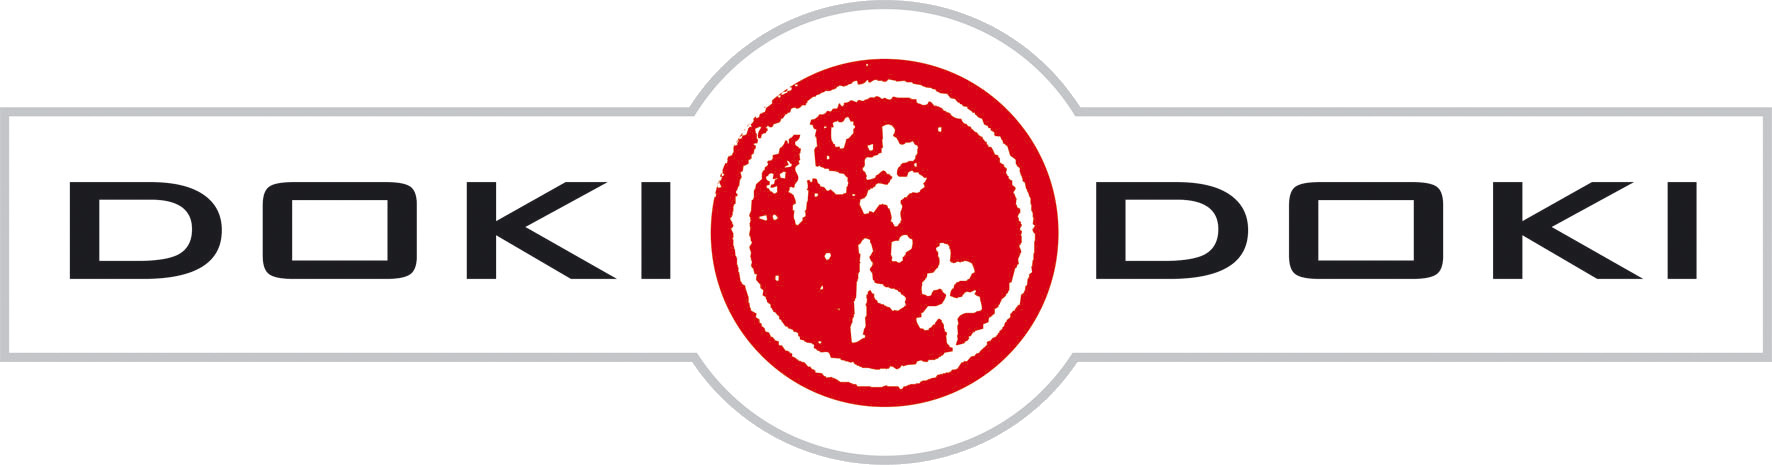 Logo Doki Doki - Doki Doki Clipart (1772x465), Png Download